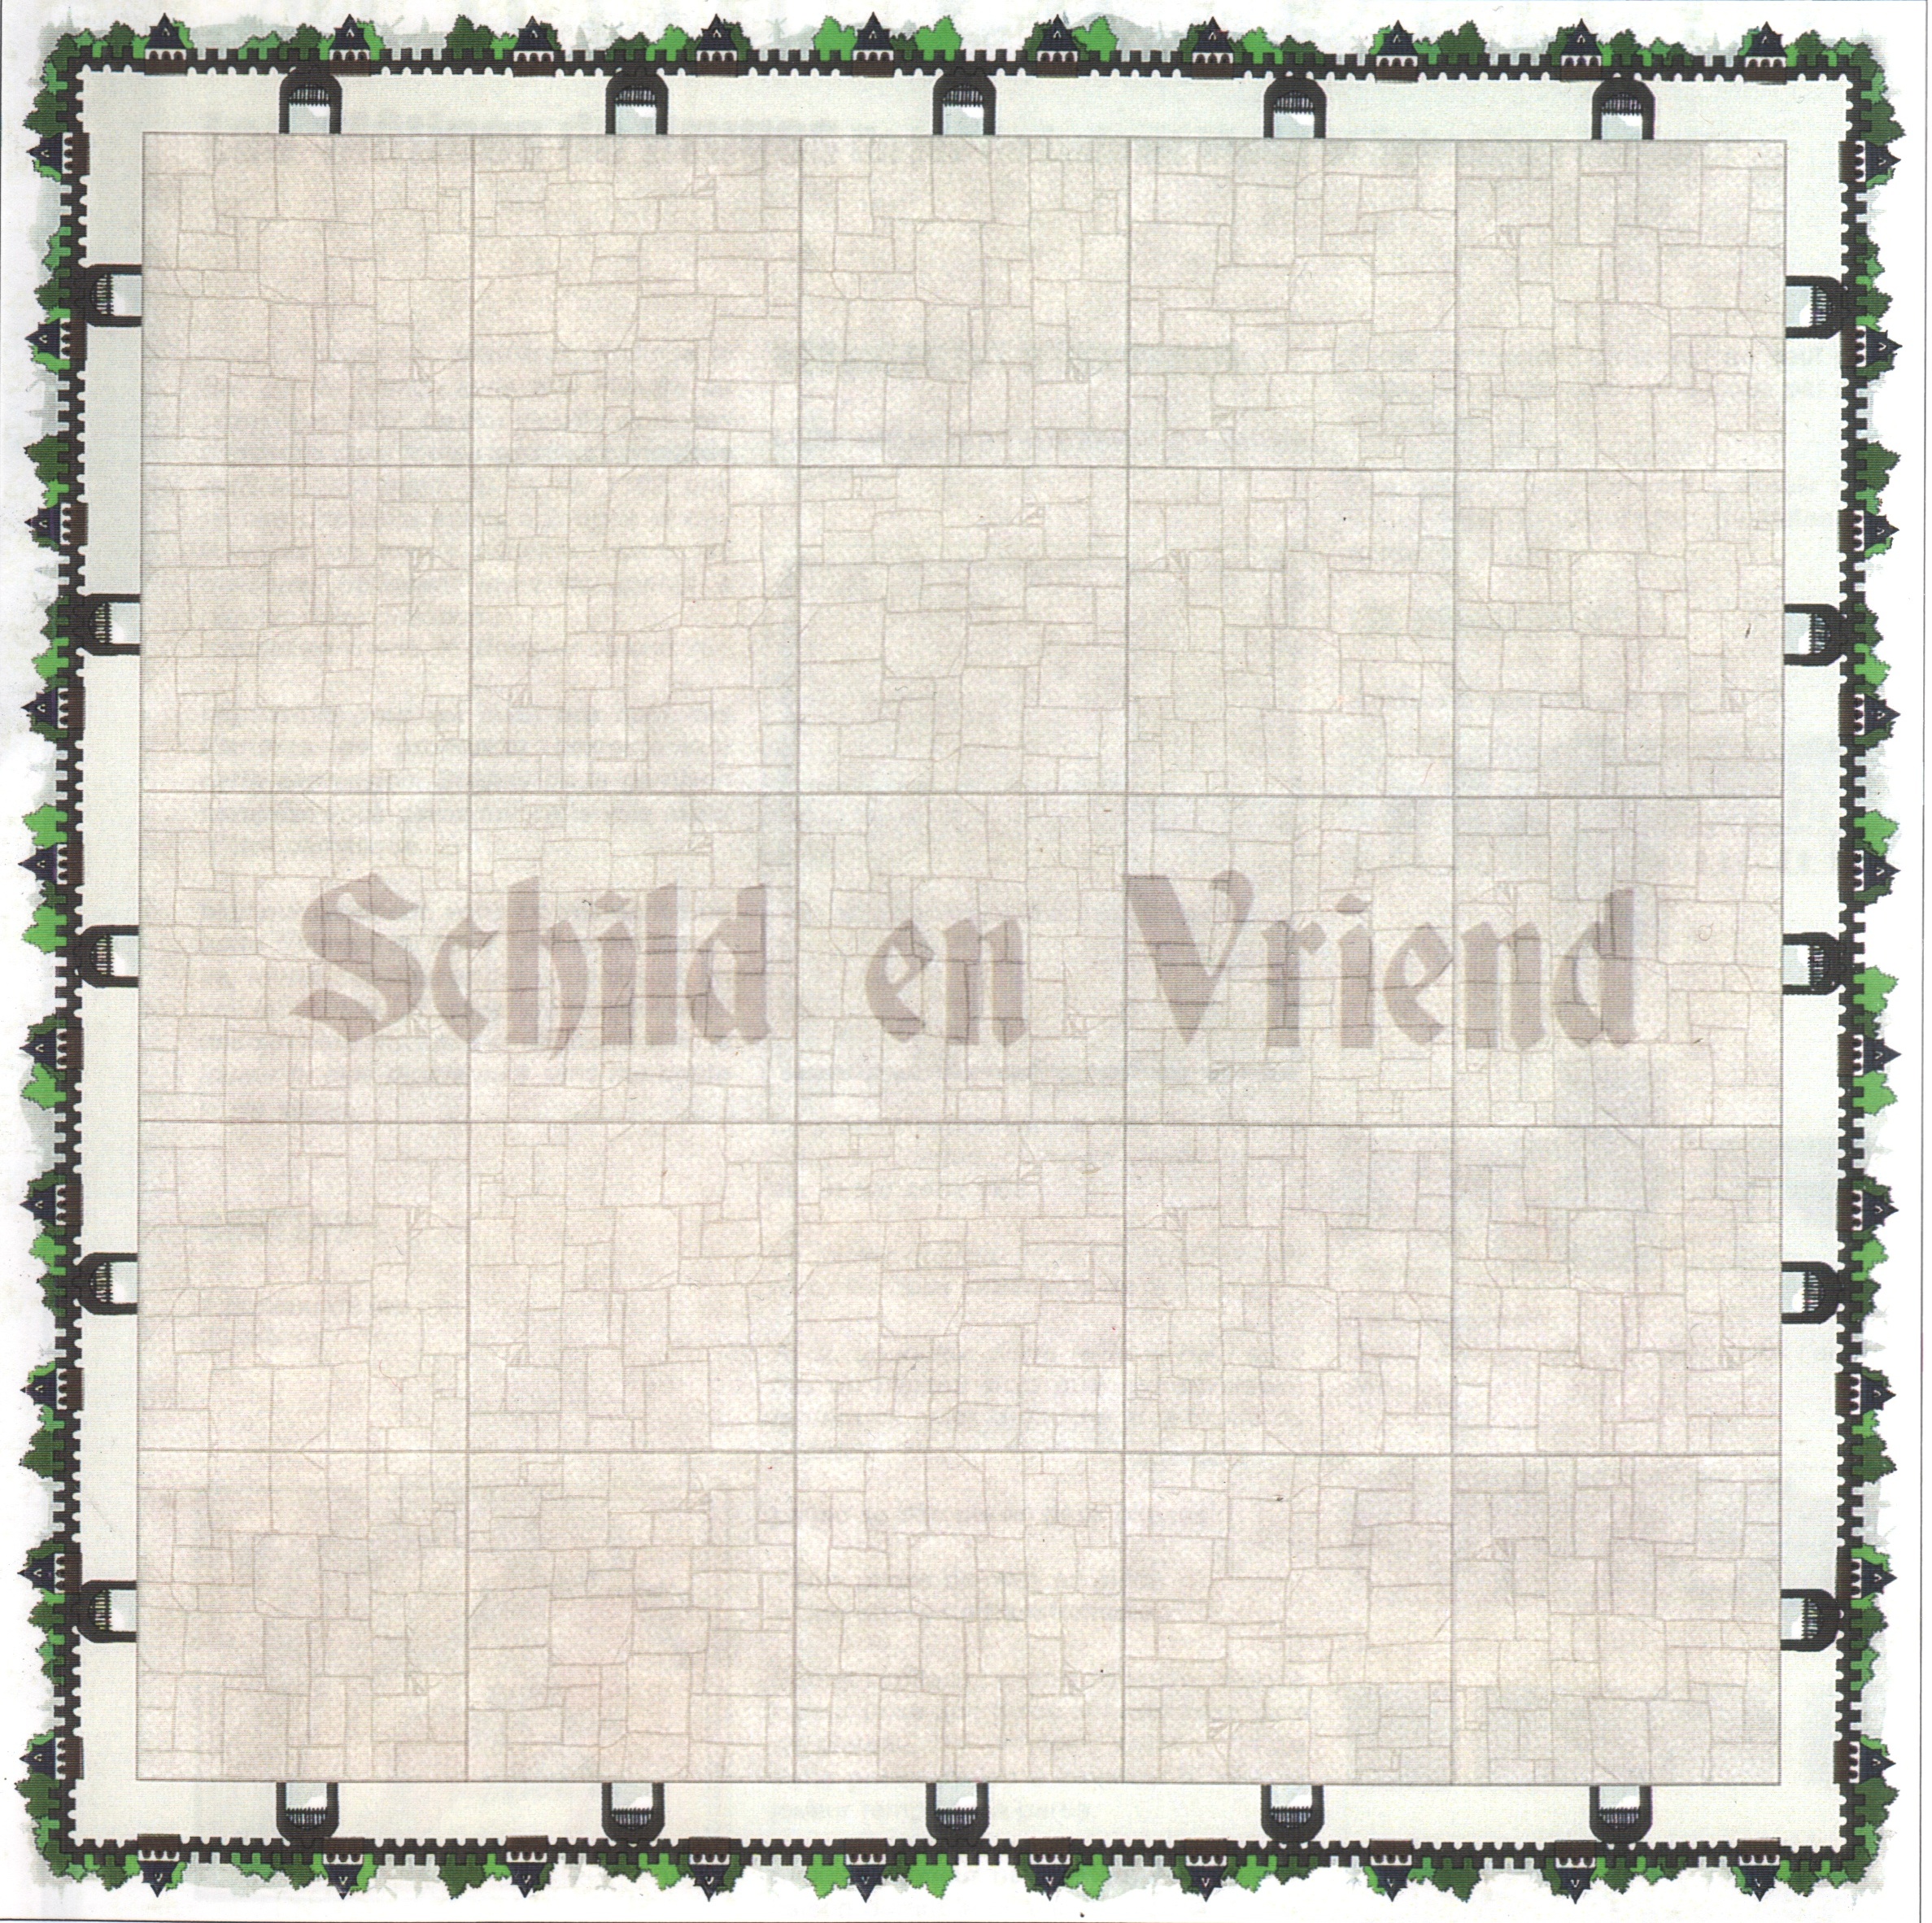 Schild en Vriend (Les Mâtines de Bruges)